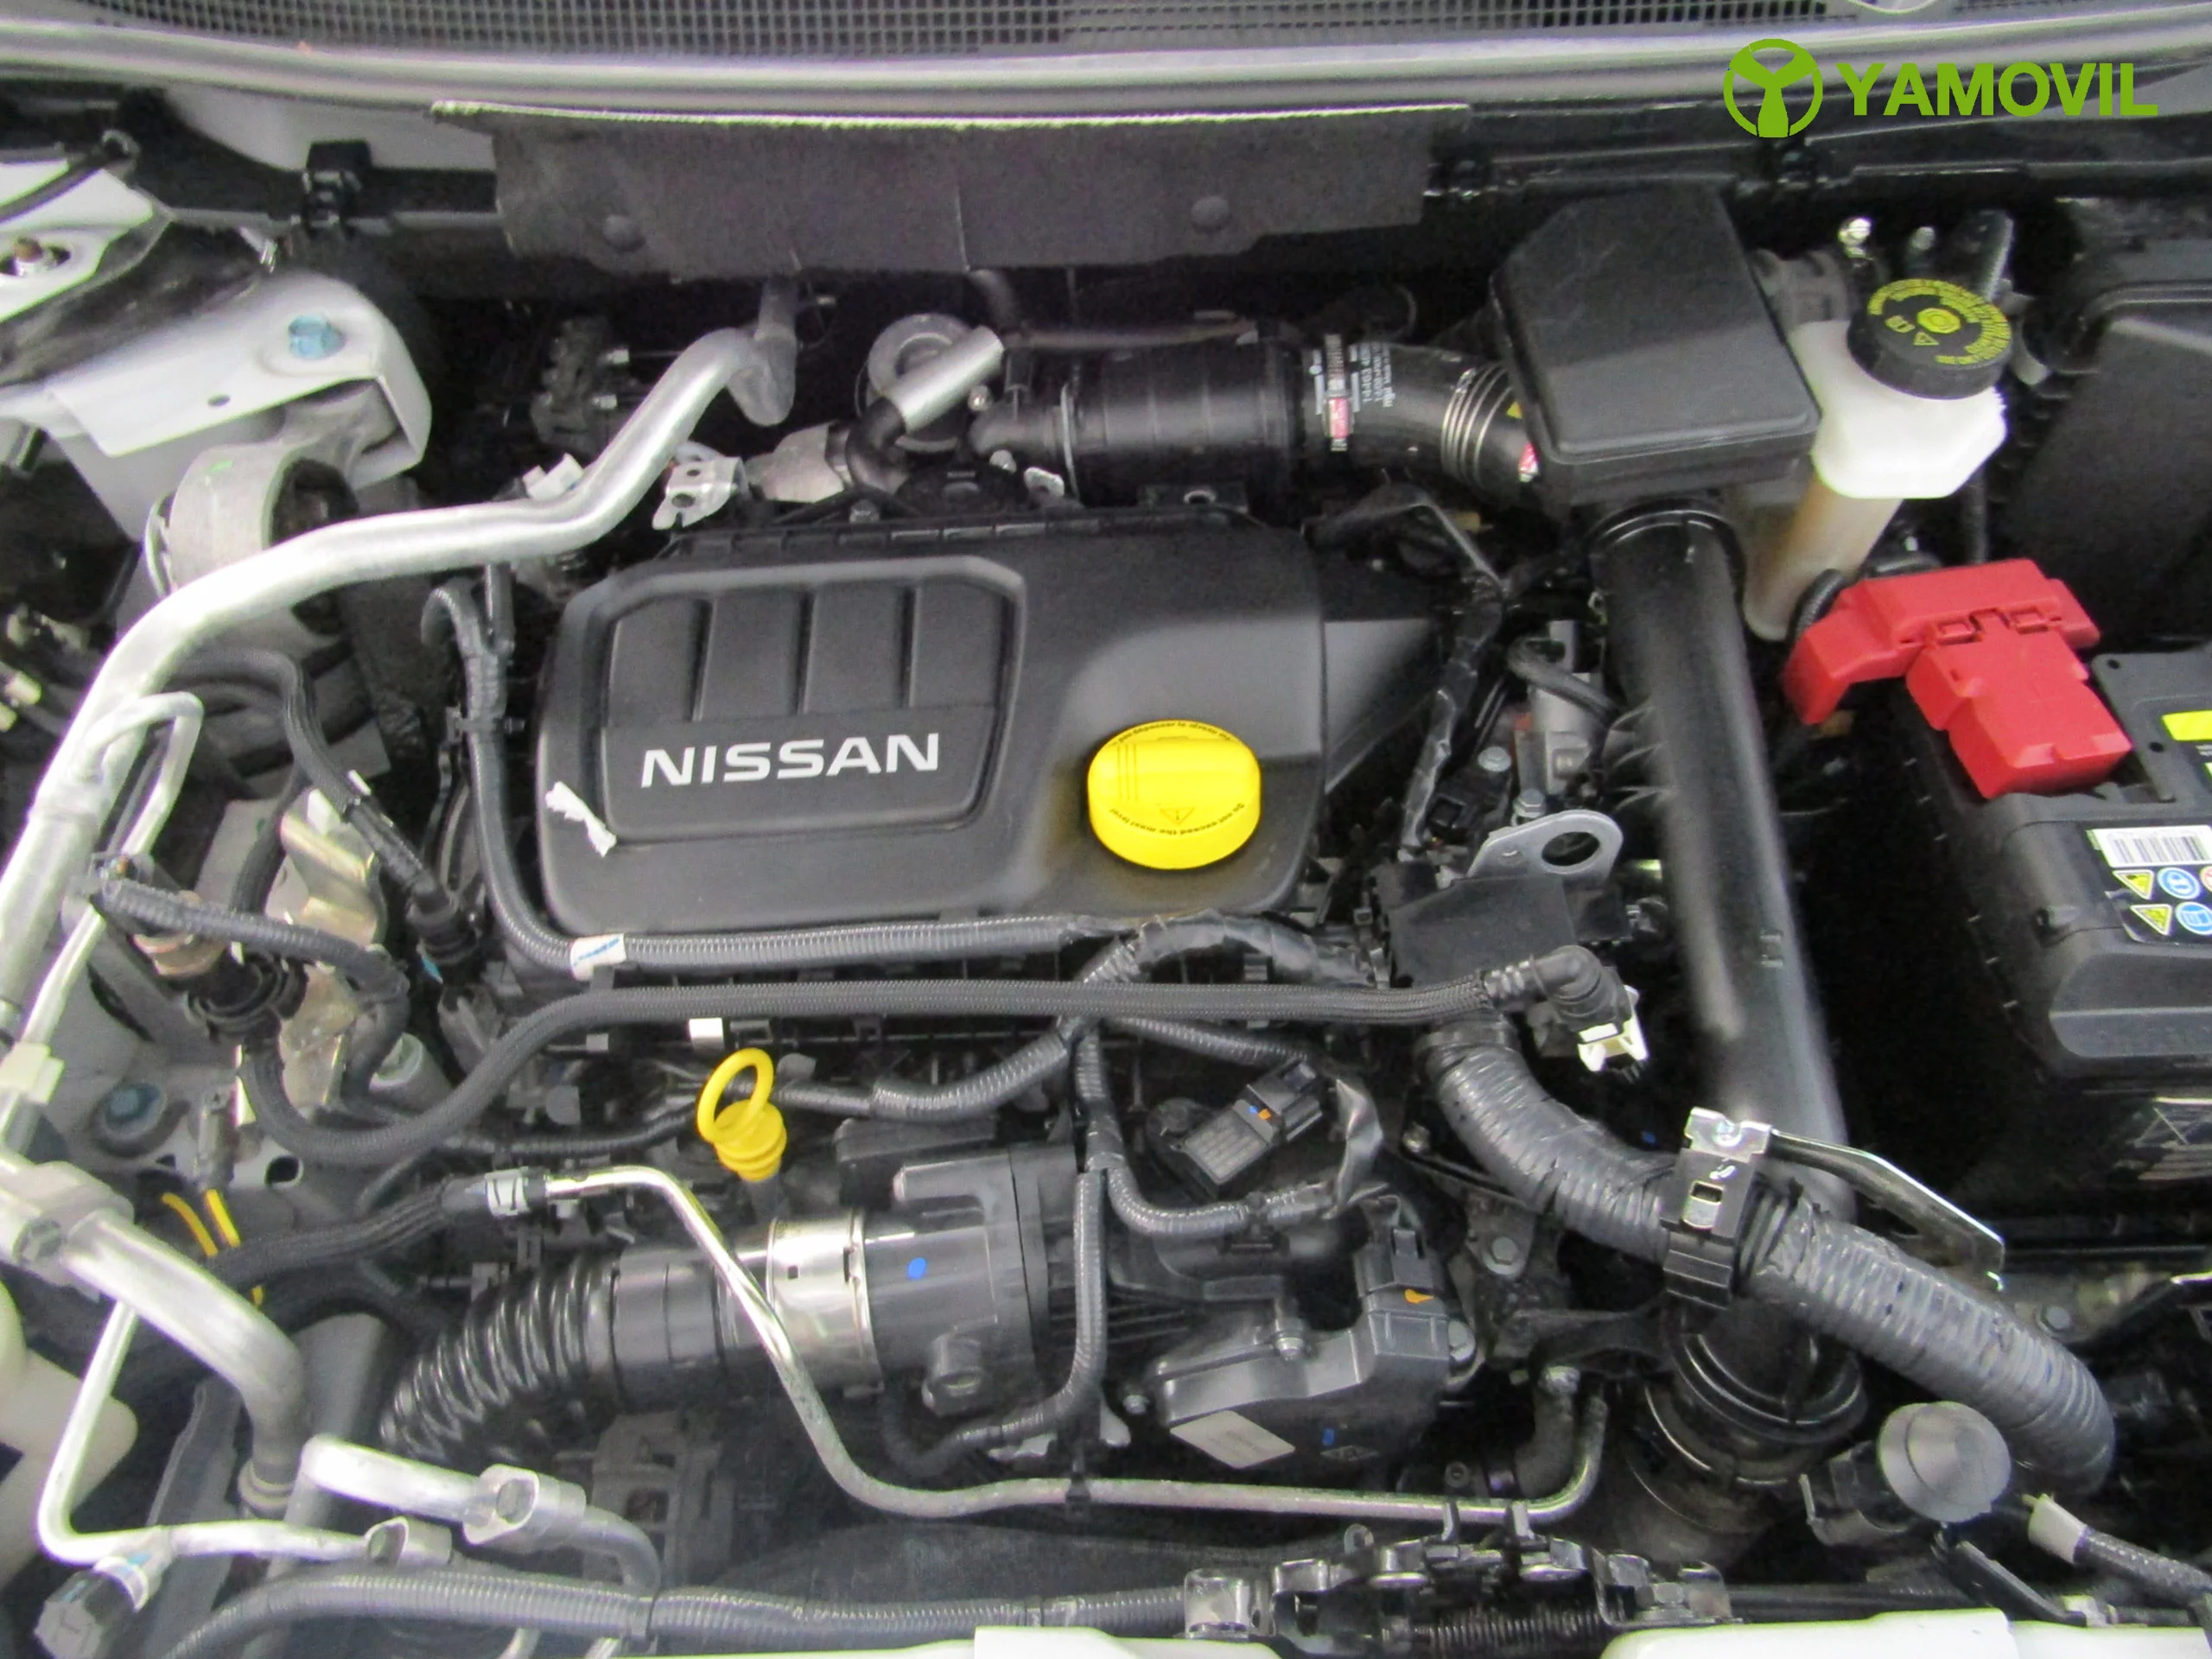 Nissan Qashqai 1.6DCI VISIA 130CV 4X4 - Foto 8